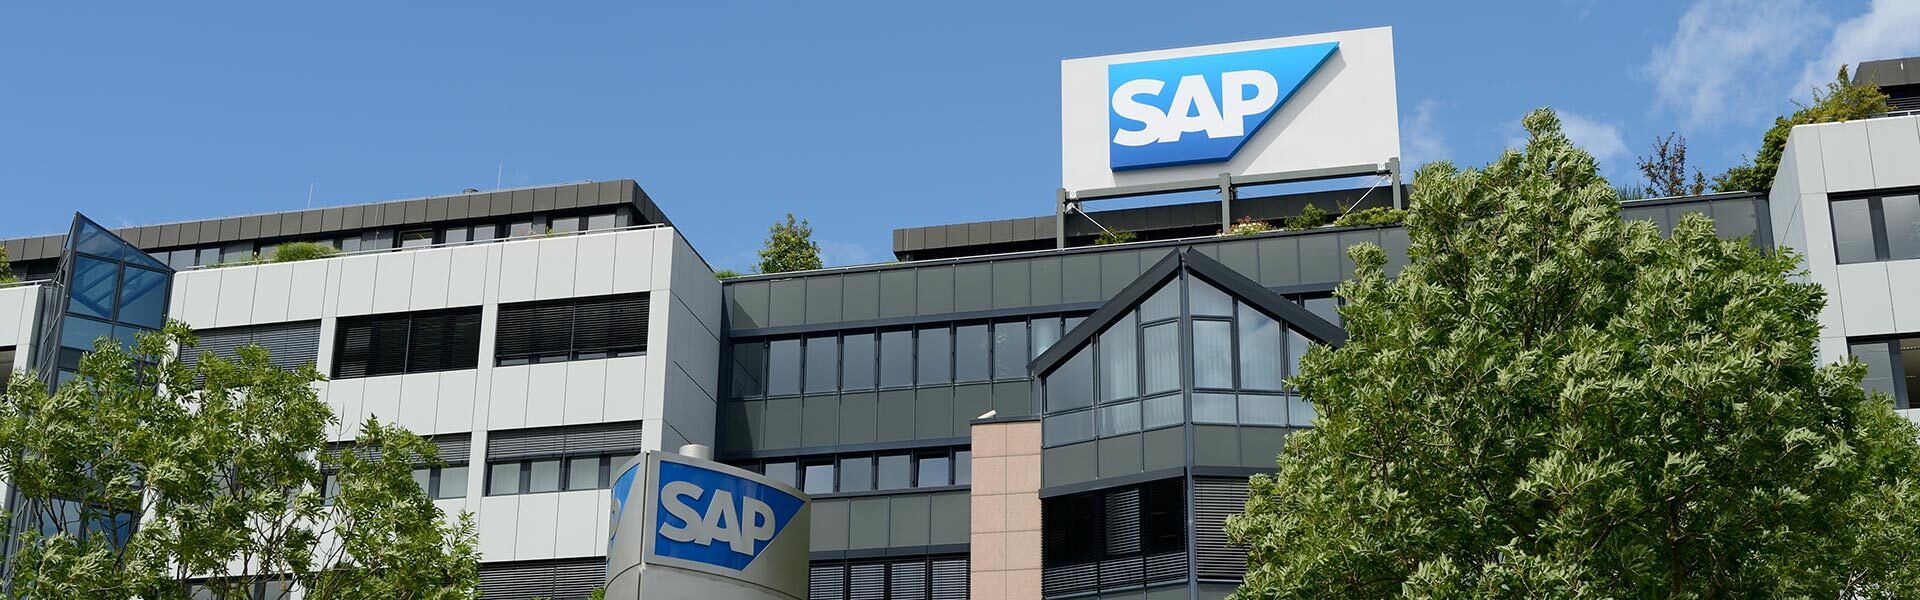 SAP、ガートナー社の2020年マジッククアドラントで セールスフォースオートメーション分野のリーダーに認定